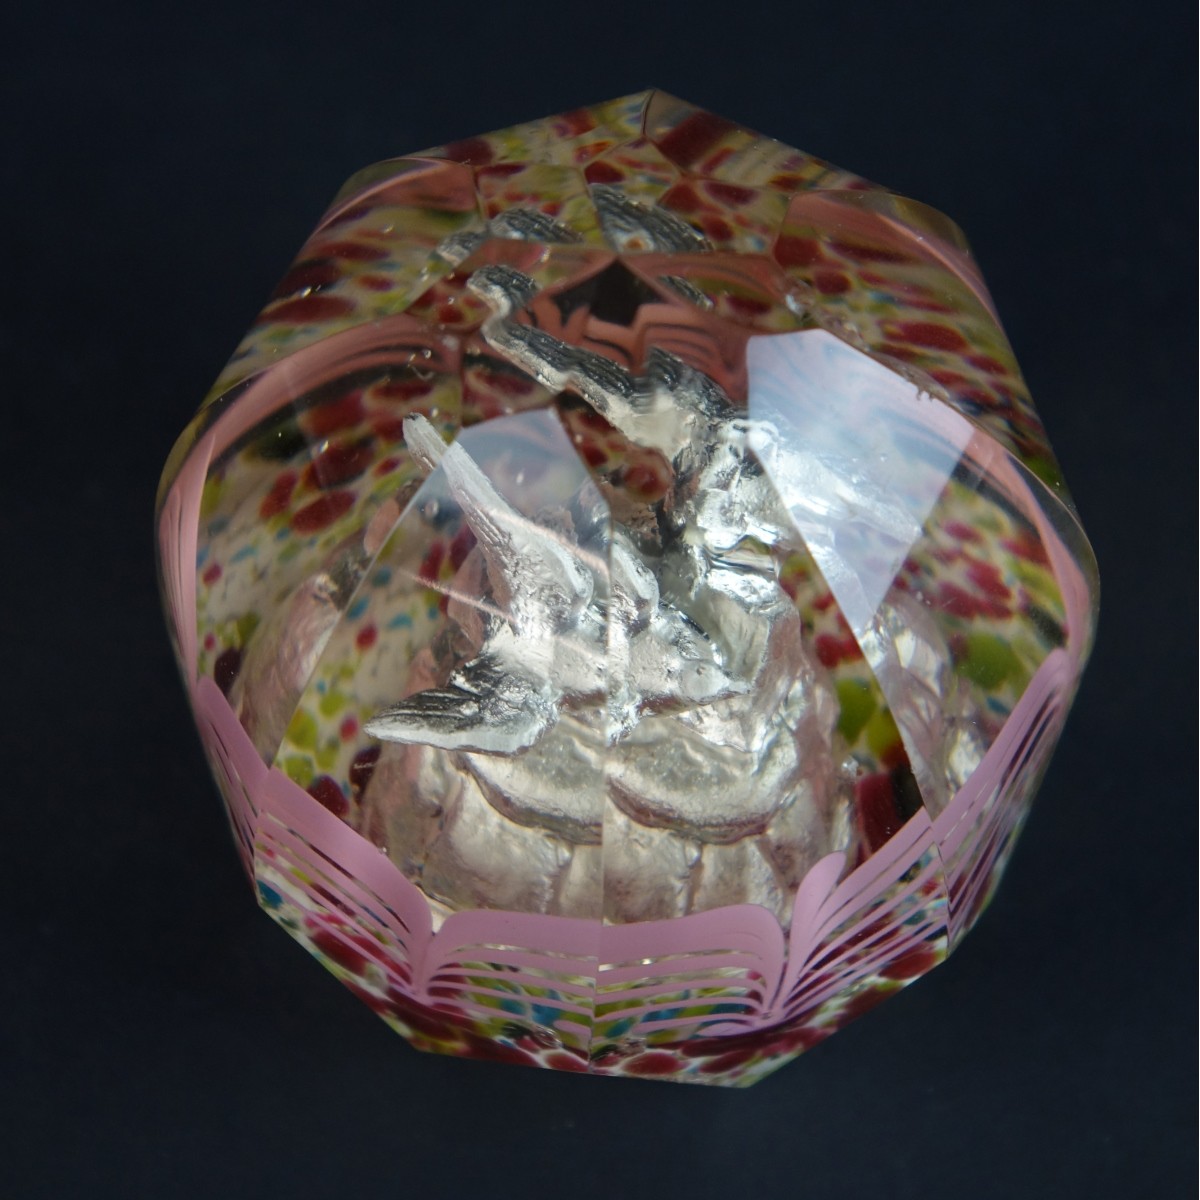 Antique Bohemian Czech Art Glass Paperweight